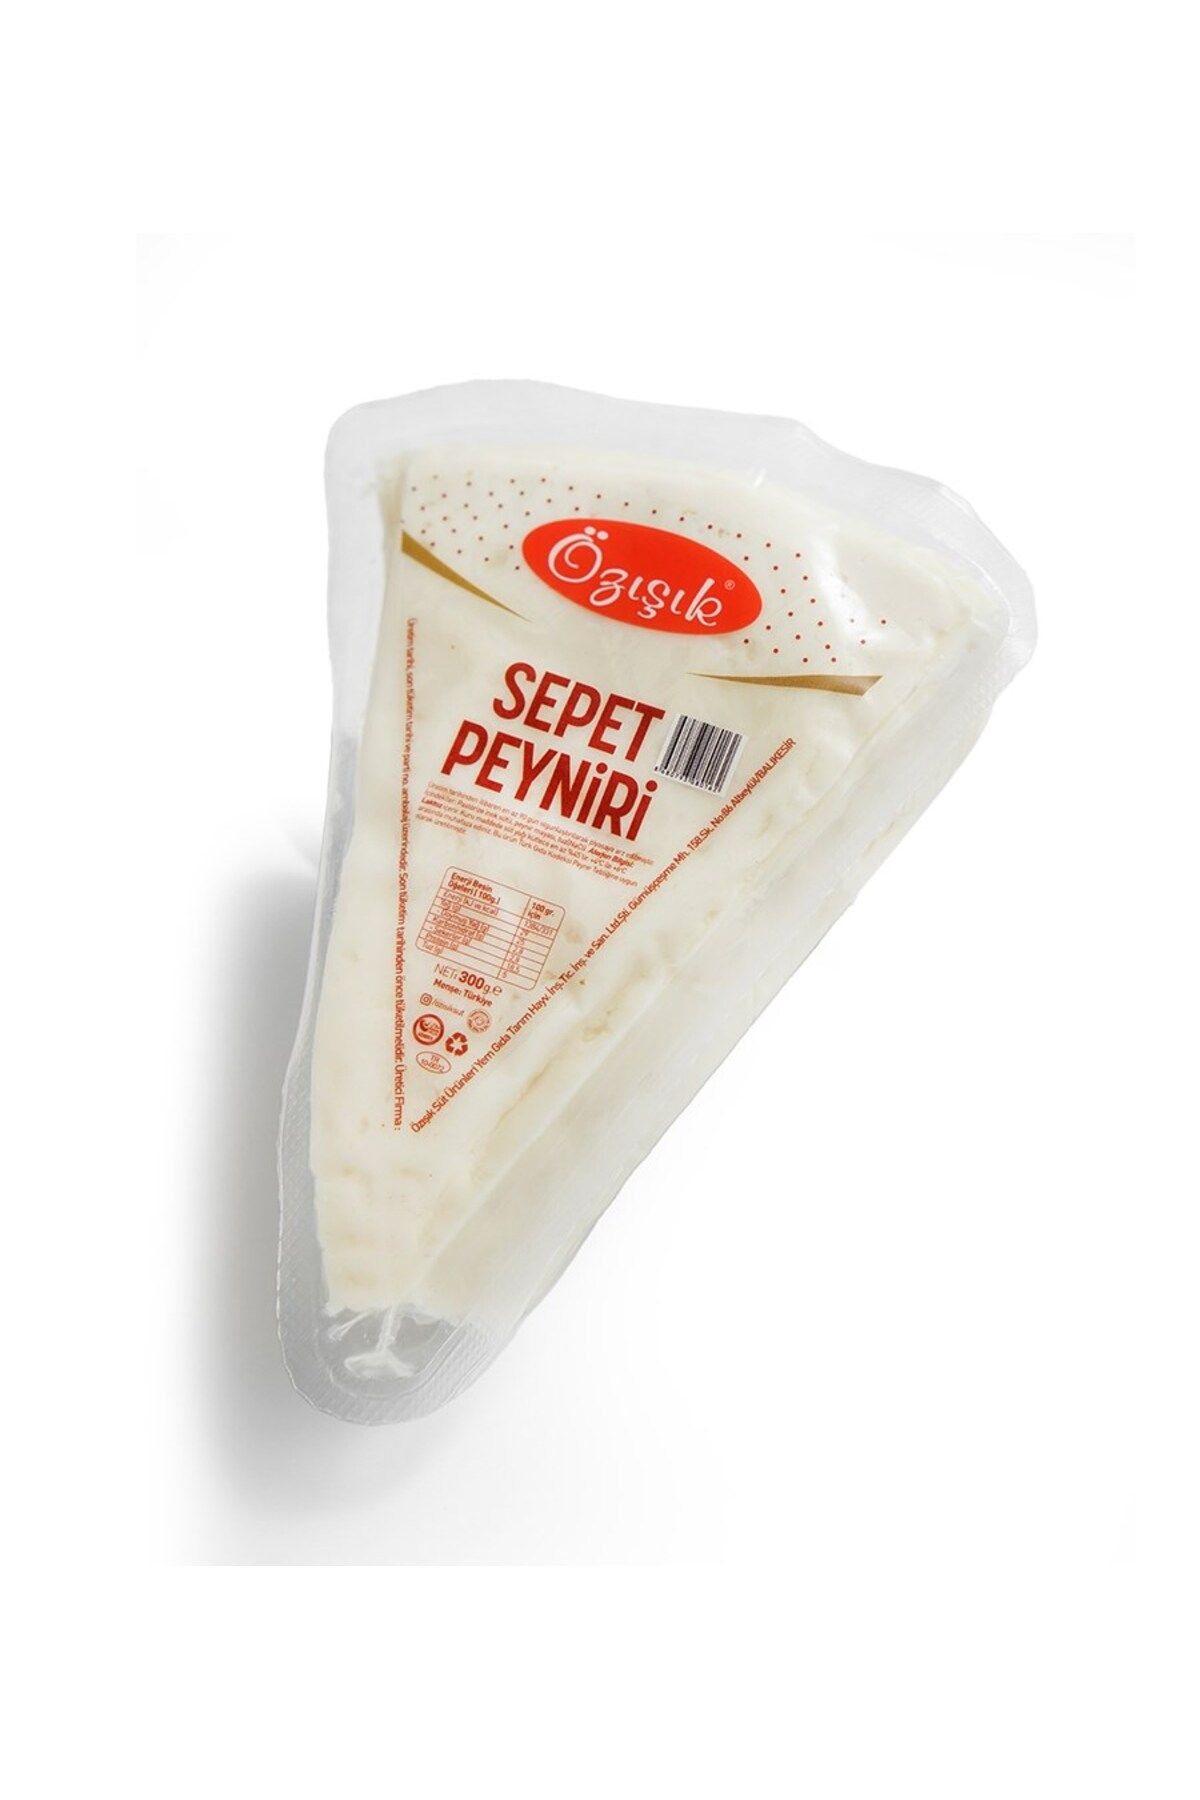 Özışık Sepet Peyniri 300 gr